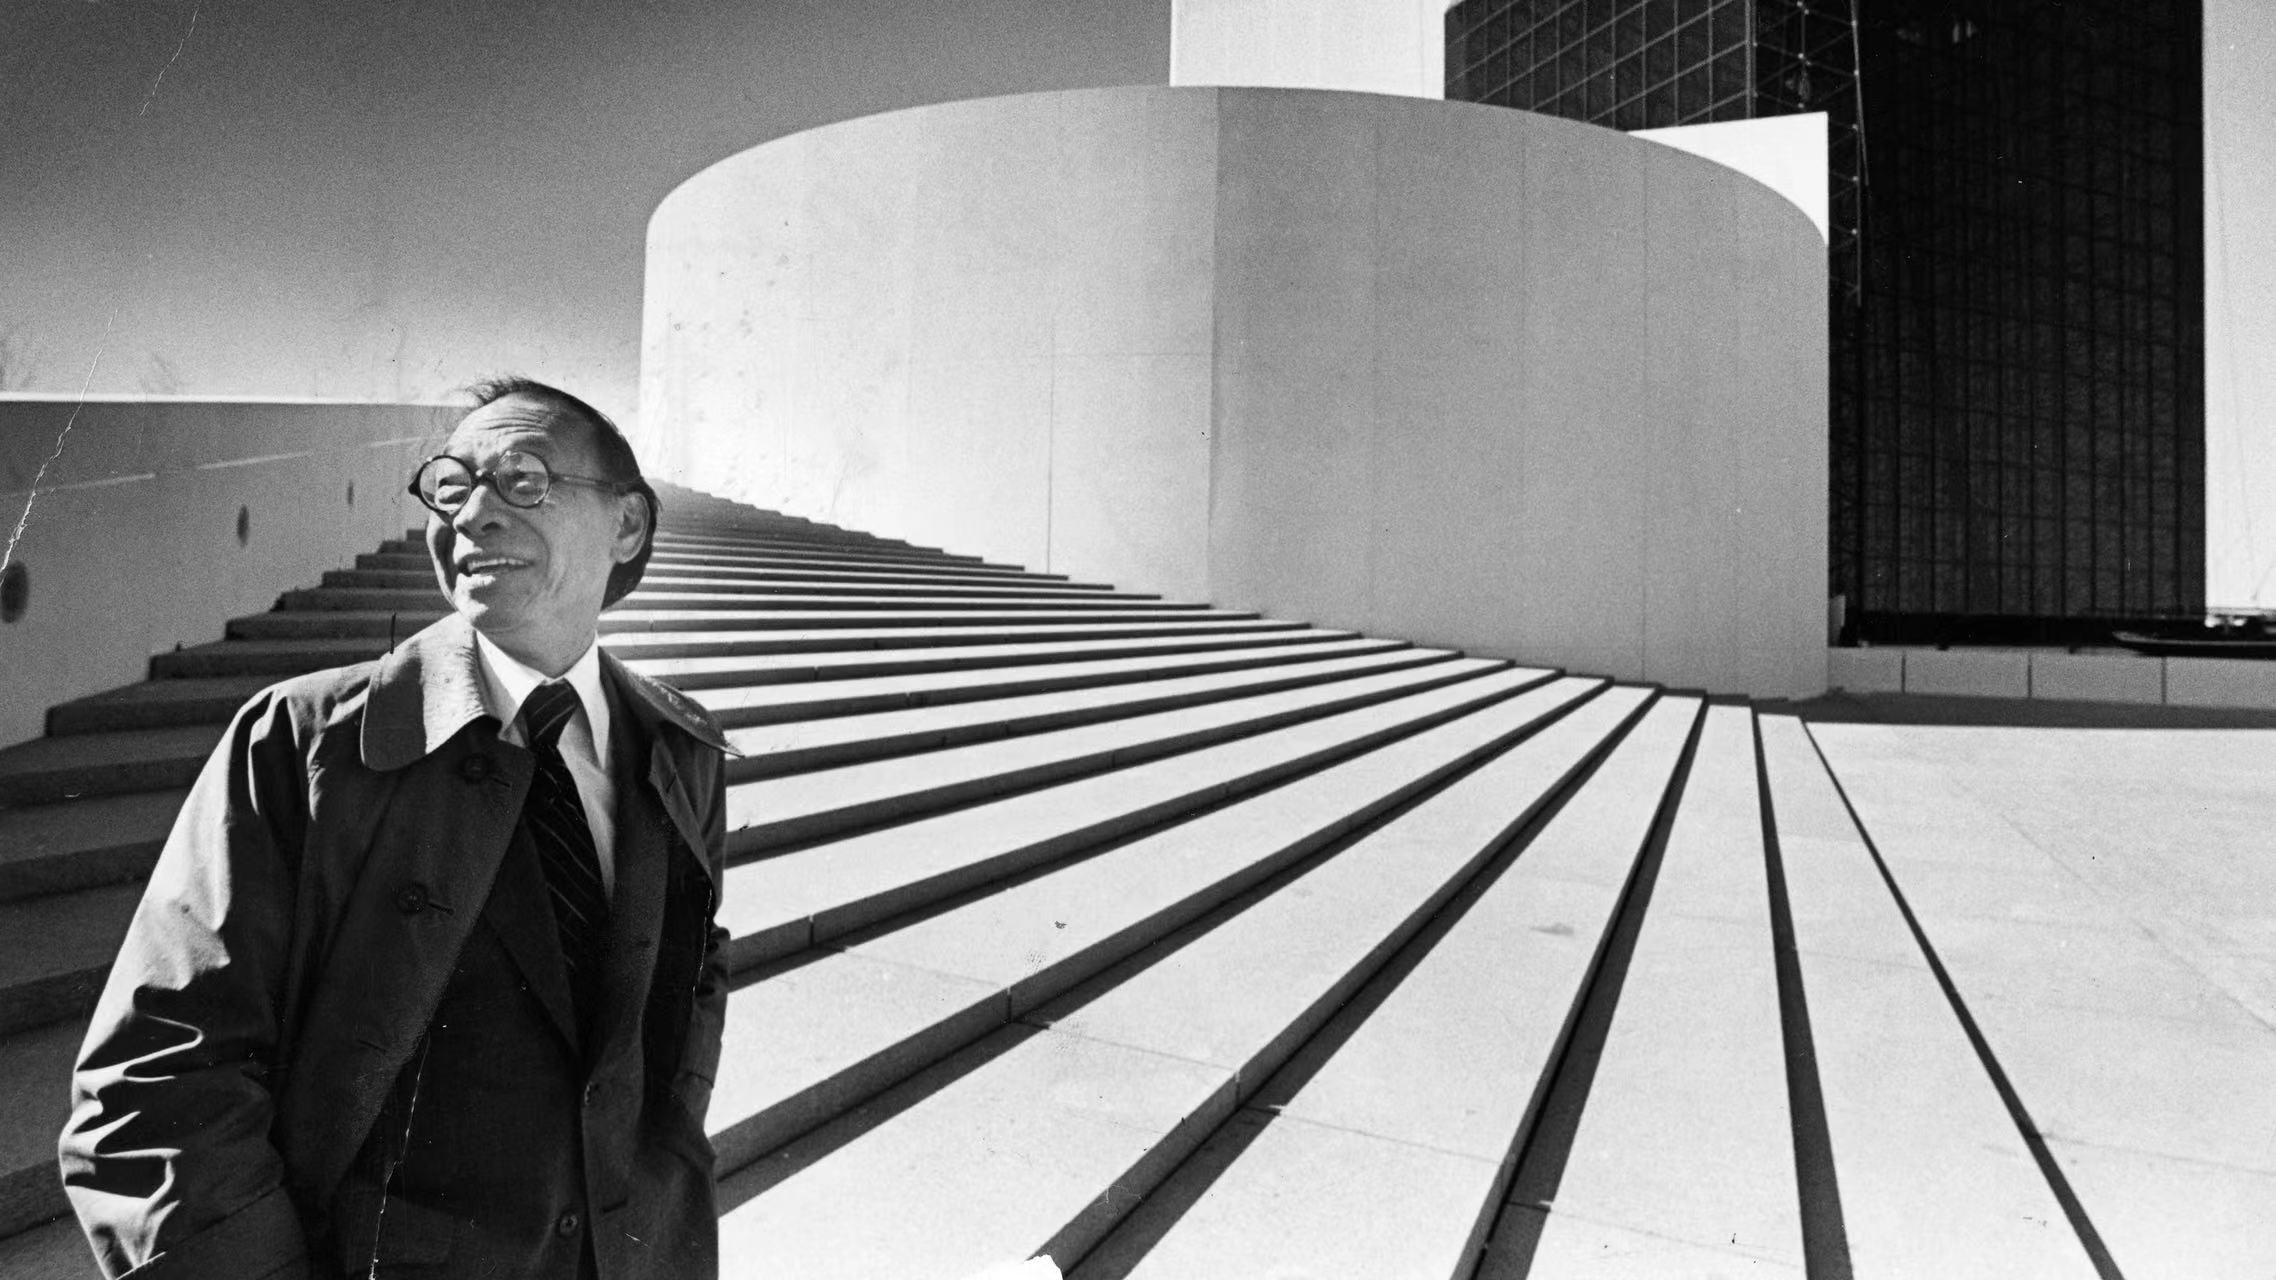 貝聿銘首個大型回顧展門票週五開售 走進現代主義建築大師的傳奇人生